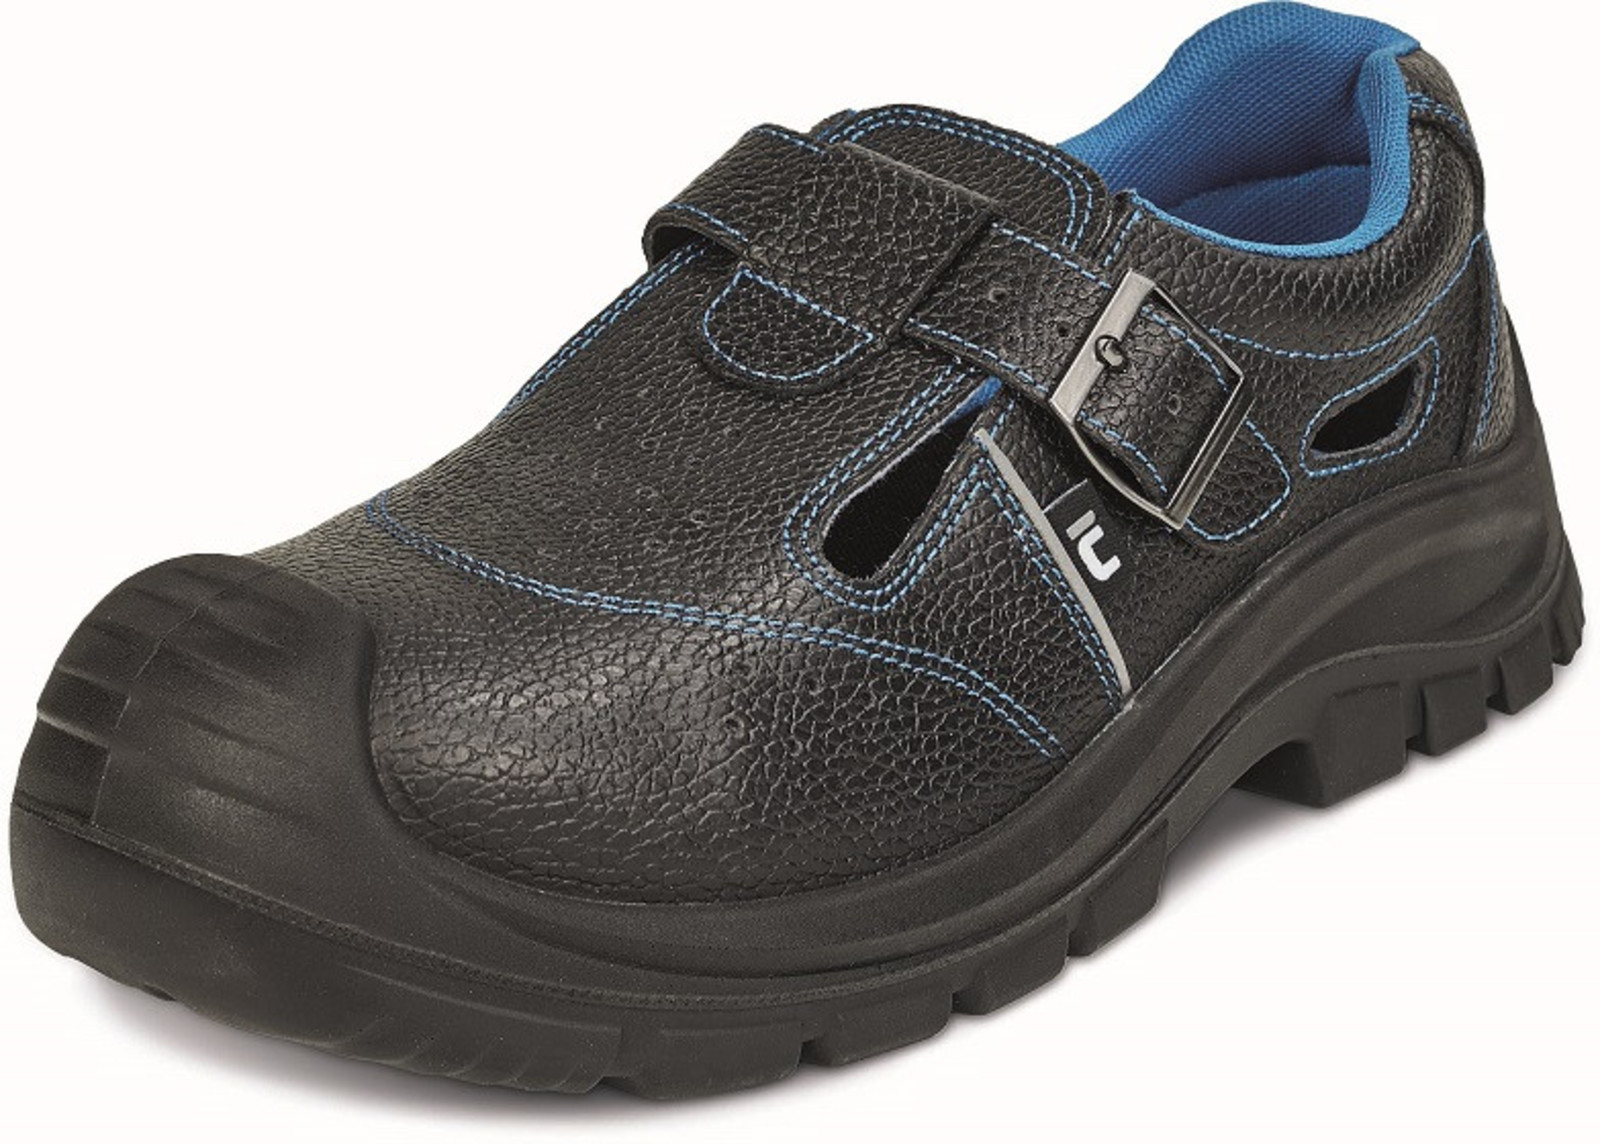 Bezpečnostné sandále Raven XT S1 SRC - veľkosť: 36, farba: čierna